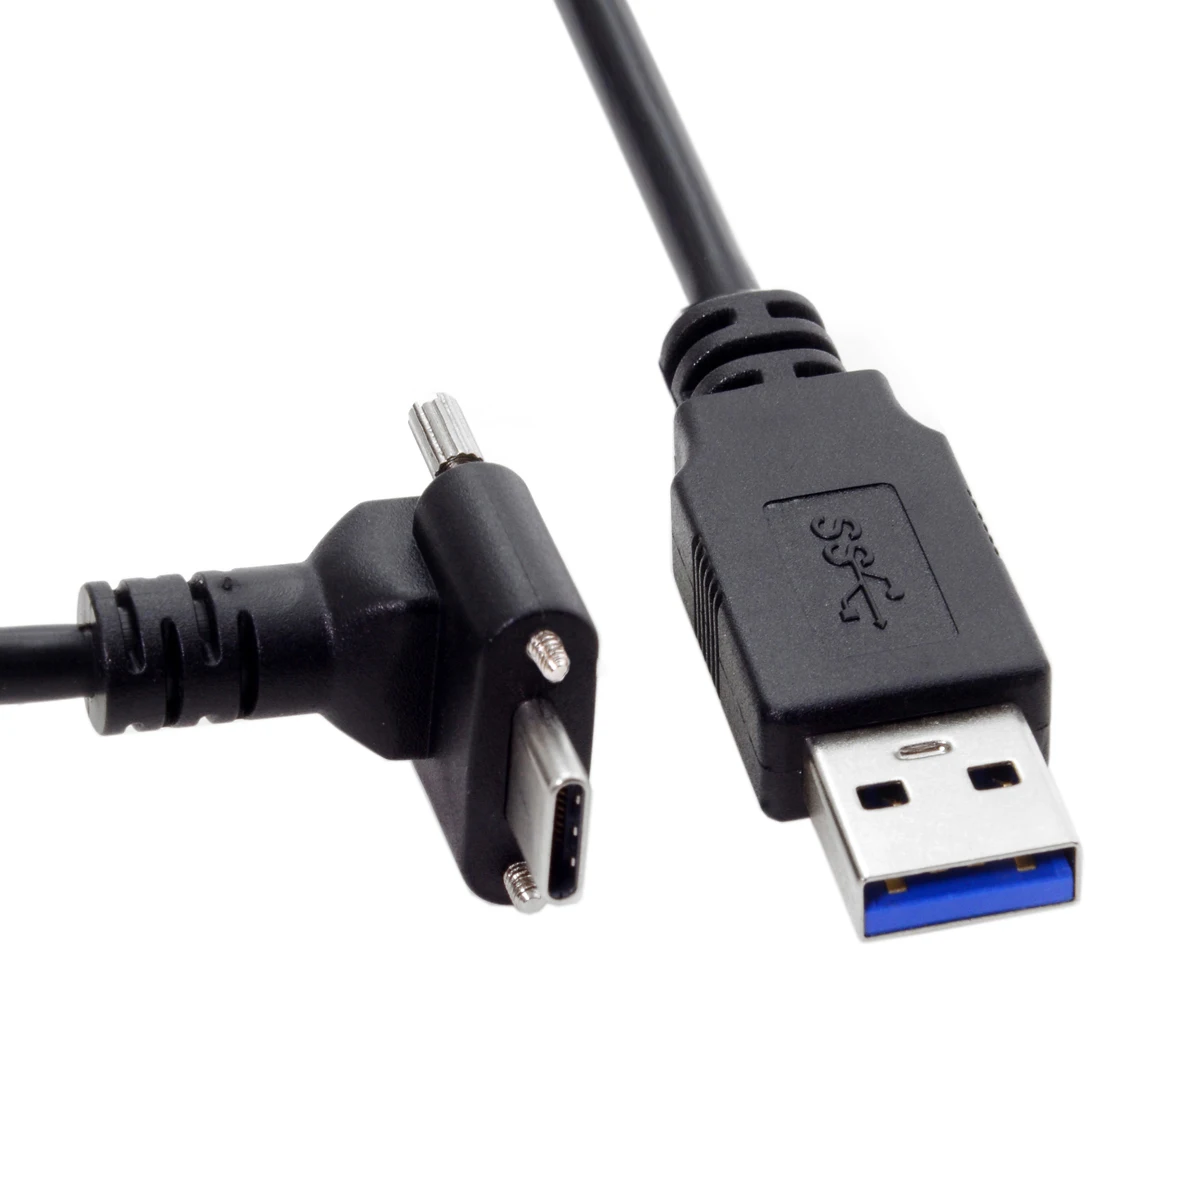 CY para Baixo para Cima em Ângulo USB 3.1-Tipo C Duplo Parafuso de Bloqueio Padrão USB3.0 Cabo de Dados 90 Graus para a Câmera